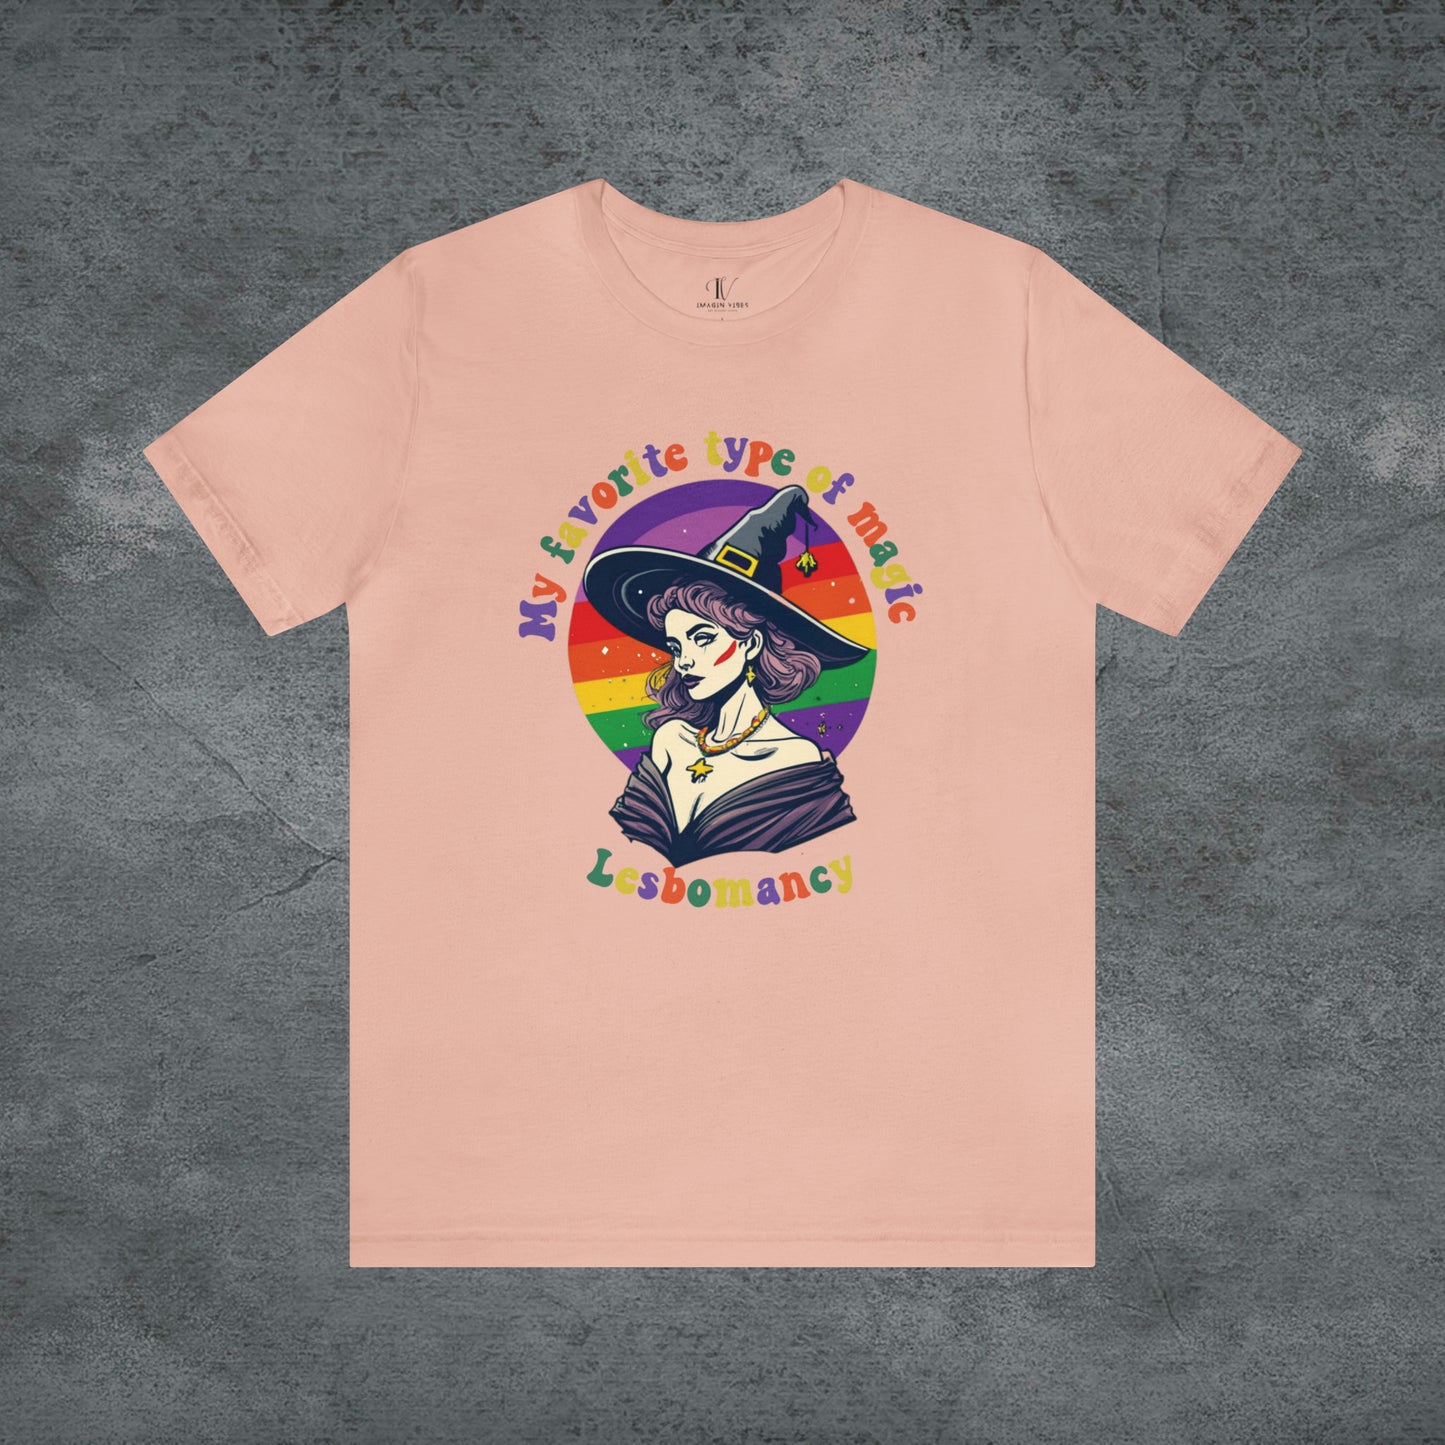 Halloween LGBT T-Shirt | Gay Witch Shirt - Spooky and Proud Tee - LGBT Halloween Shirt - Lesbian Halloween T-Shirt Peach XS 